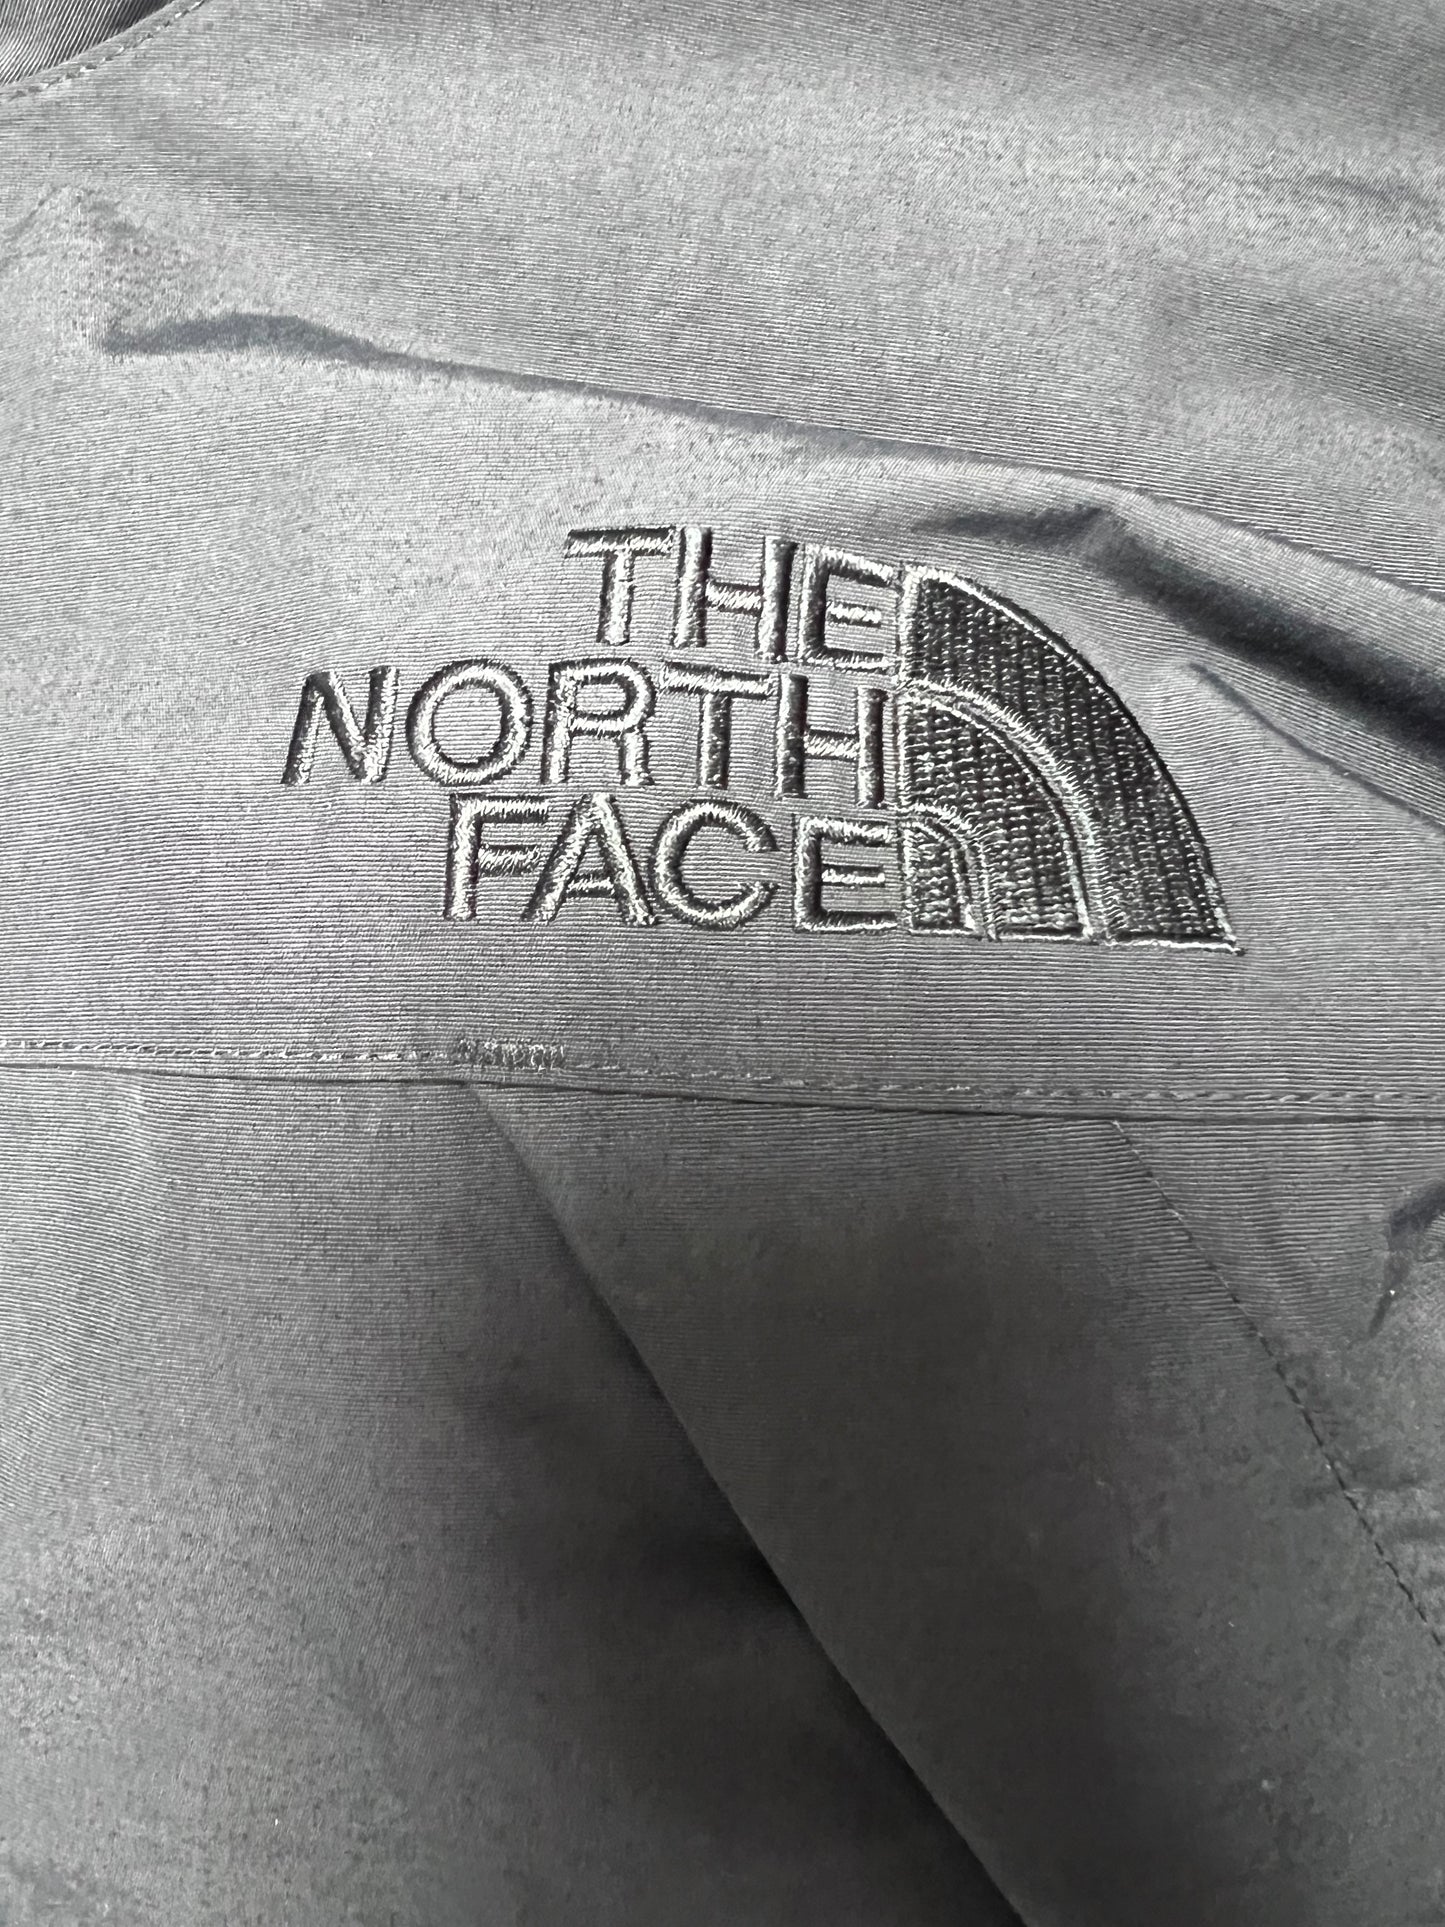 10053【THE NORTH FACE】ザノースフェイス メンズ HYVENT ハイベント グース ダウンジャケット ブラック 100